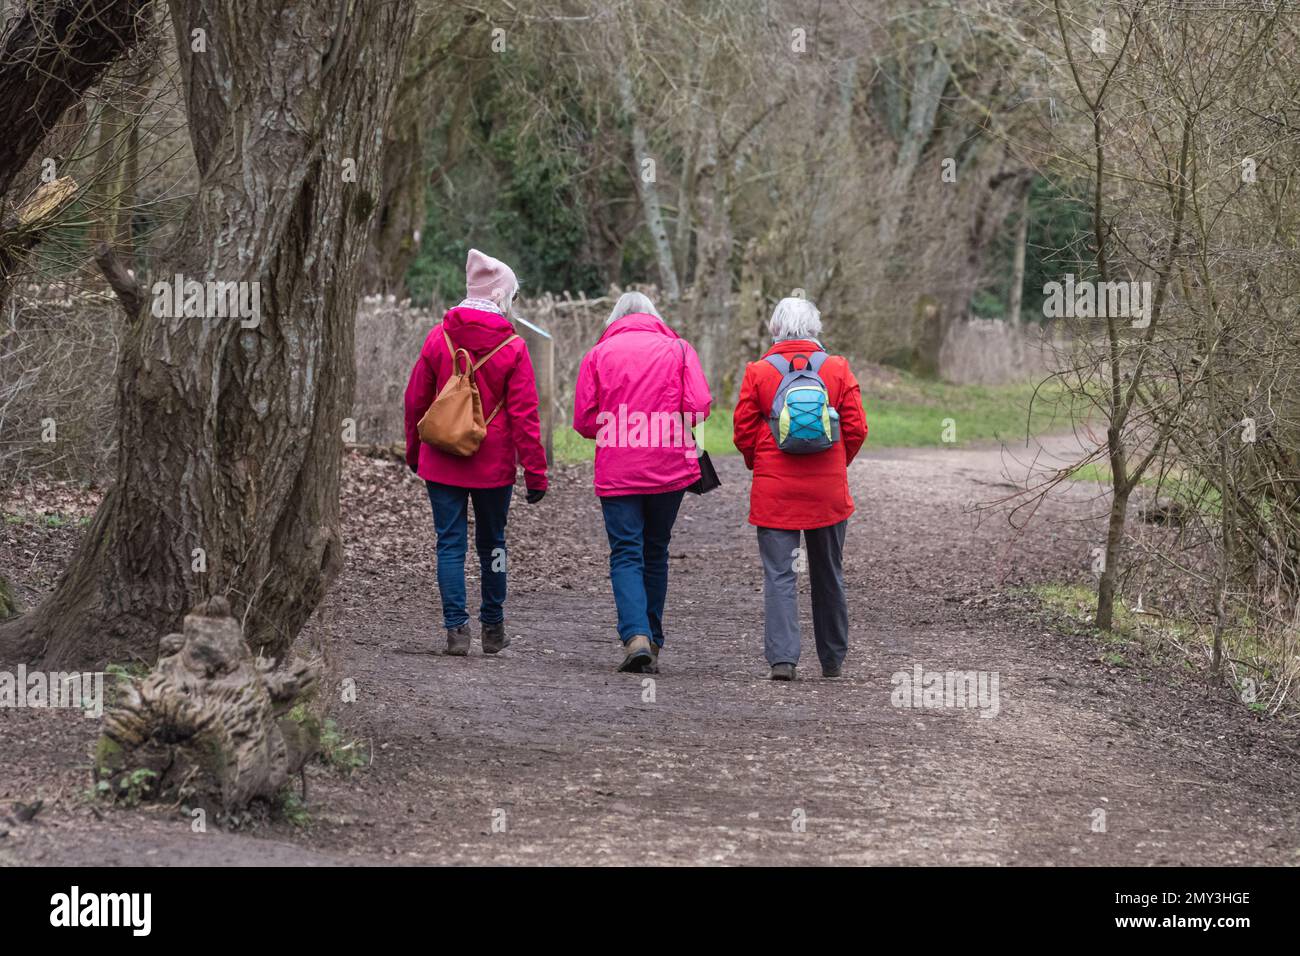 Tre donne in una passeggiata invernale nel bosco indossando cappotti dai colori vivaci, Berkshire, Inghilterra, Regno Unito Foto Stock